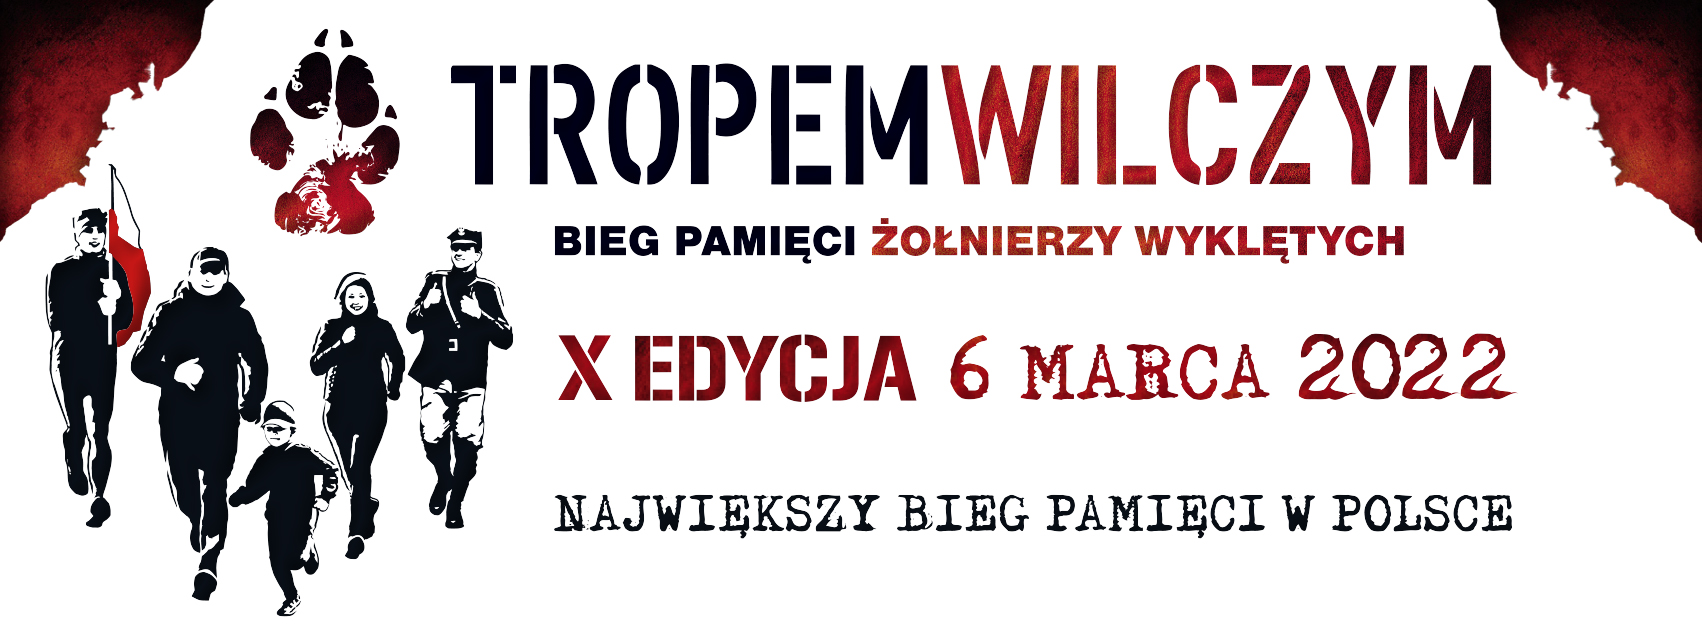 Na białym tle, po lewej stronie znajdują się biegnące 4 dorosłe osoby i dziecko, jeden mężczyzna trzyma flagę Polski. Nad nimi znajduje się symbol biegu- łapa wilka. Na środku plakatu znajduje się tekst TROPEM WILCZYM- Bieg Pamięci Żołnierzy Wyklętych, X edycja- 6 marca 2022, Największy Bieg Pamięci w Polsce.